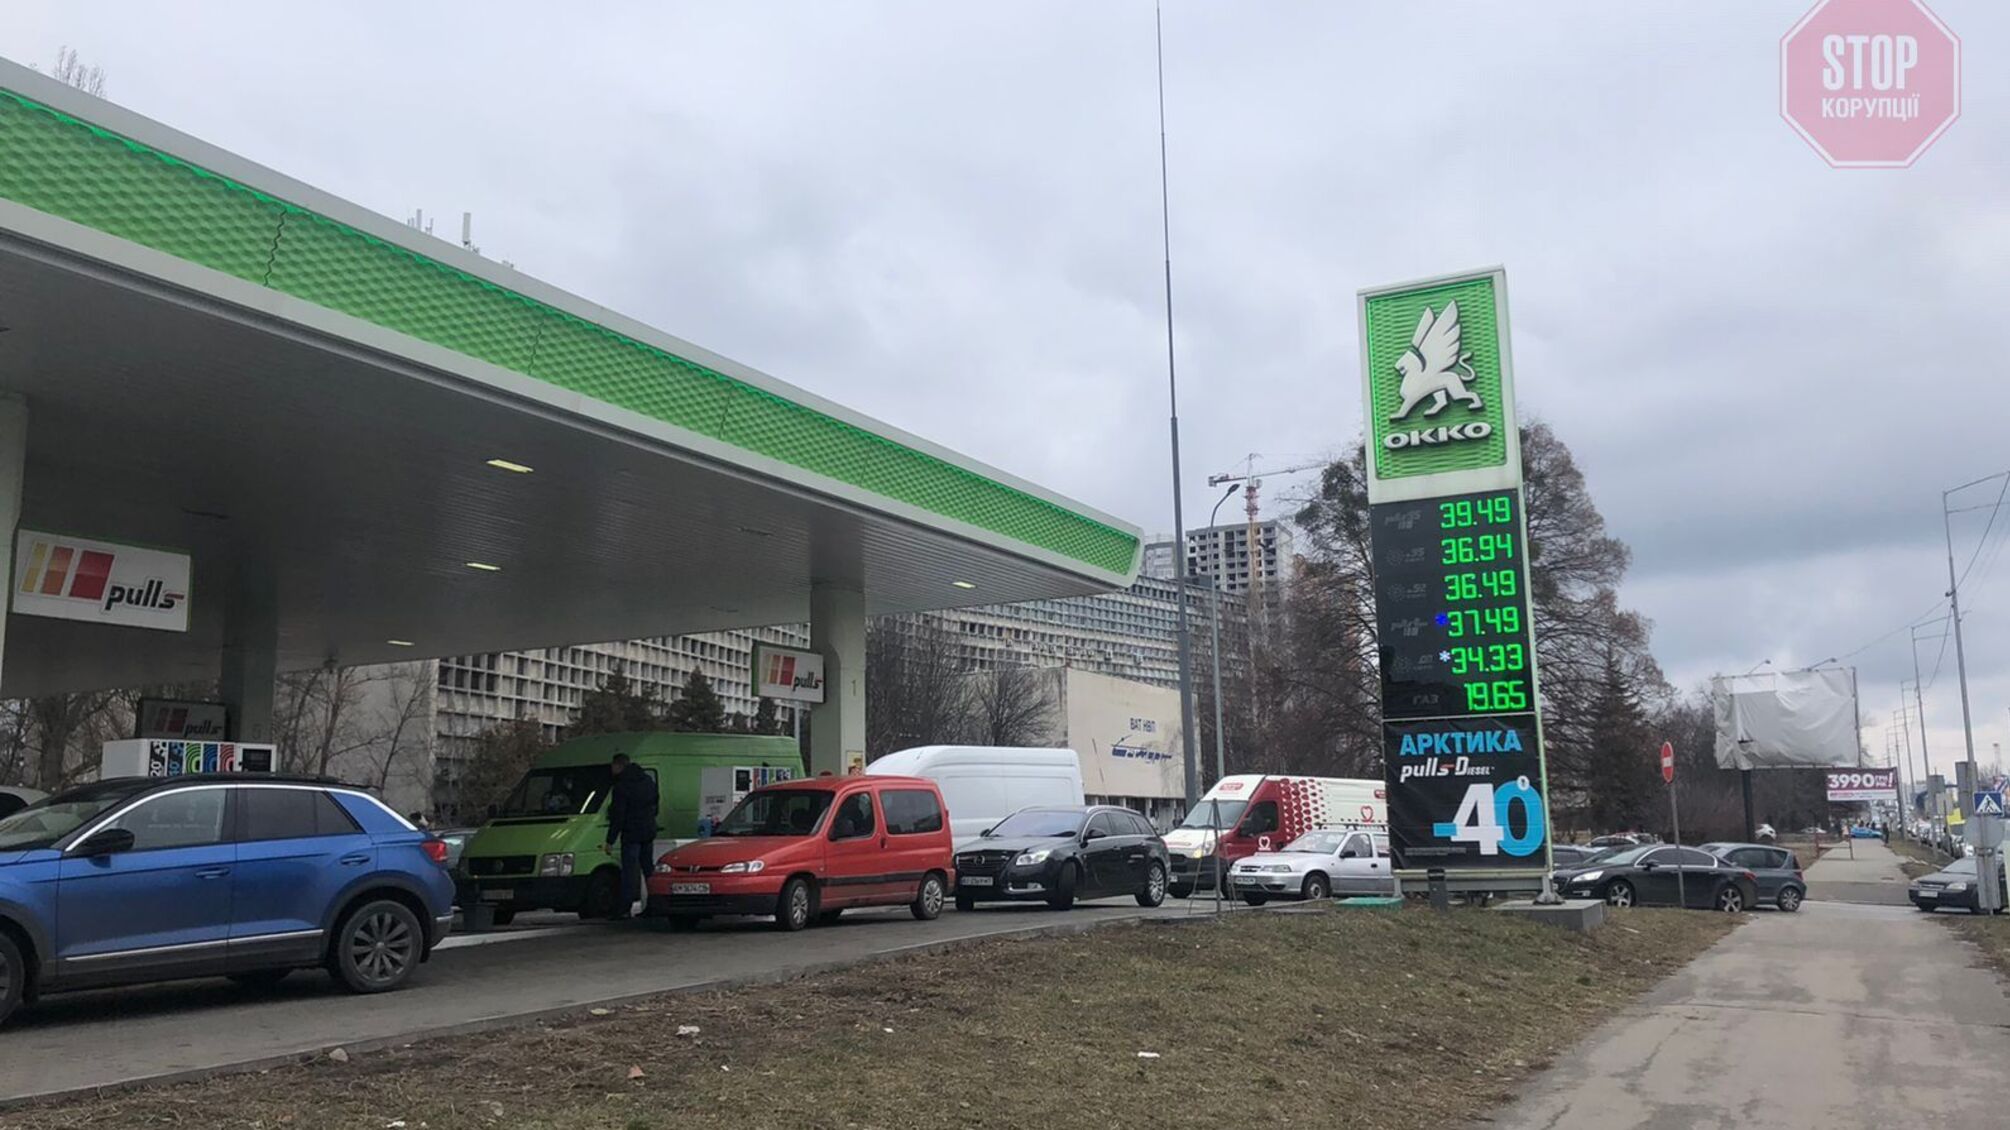 Величезні черги на АЗС Києва, продаж палива обмежений, - журналістка «Стопкору»